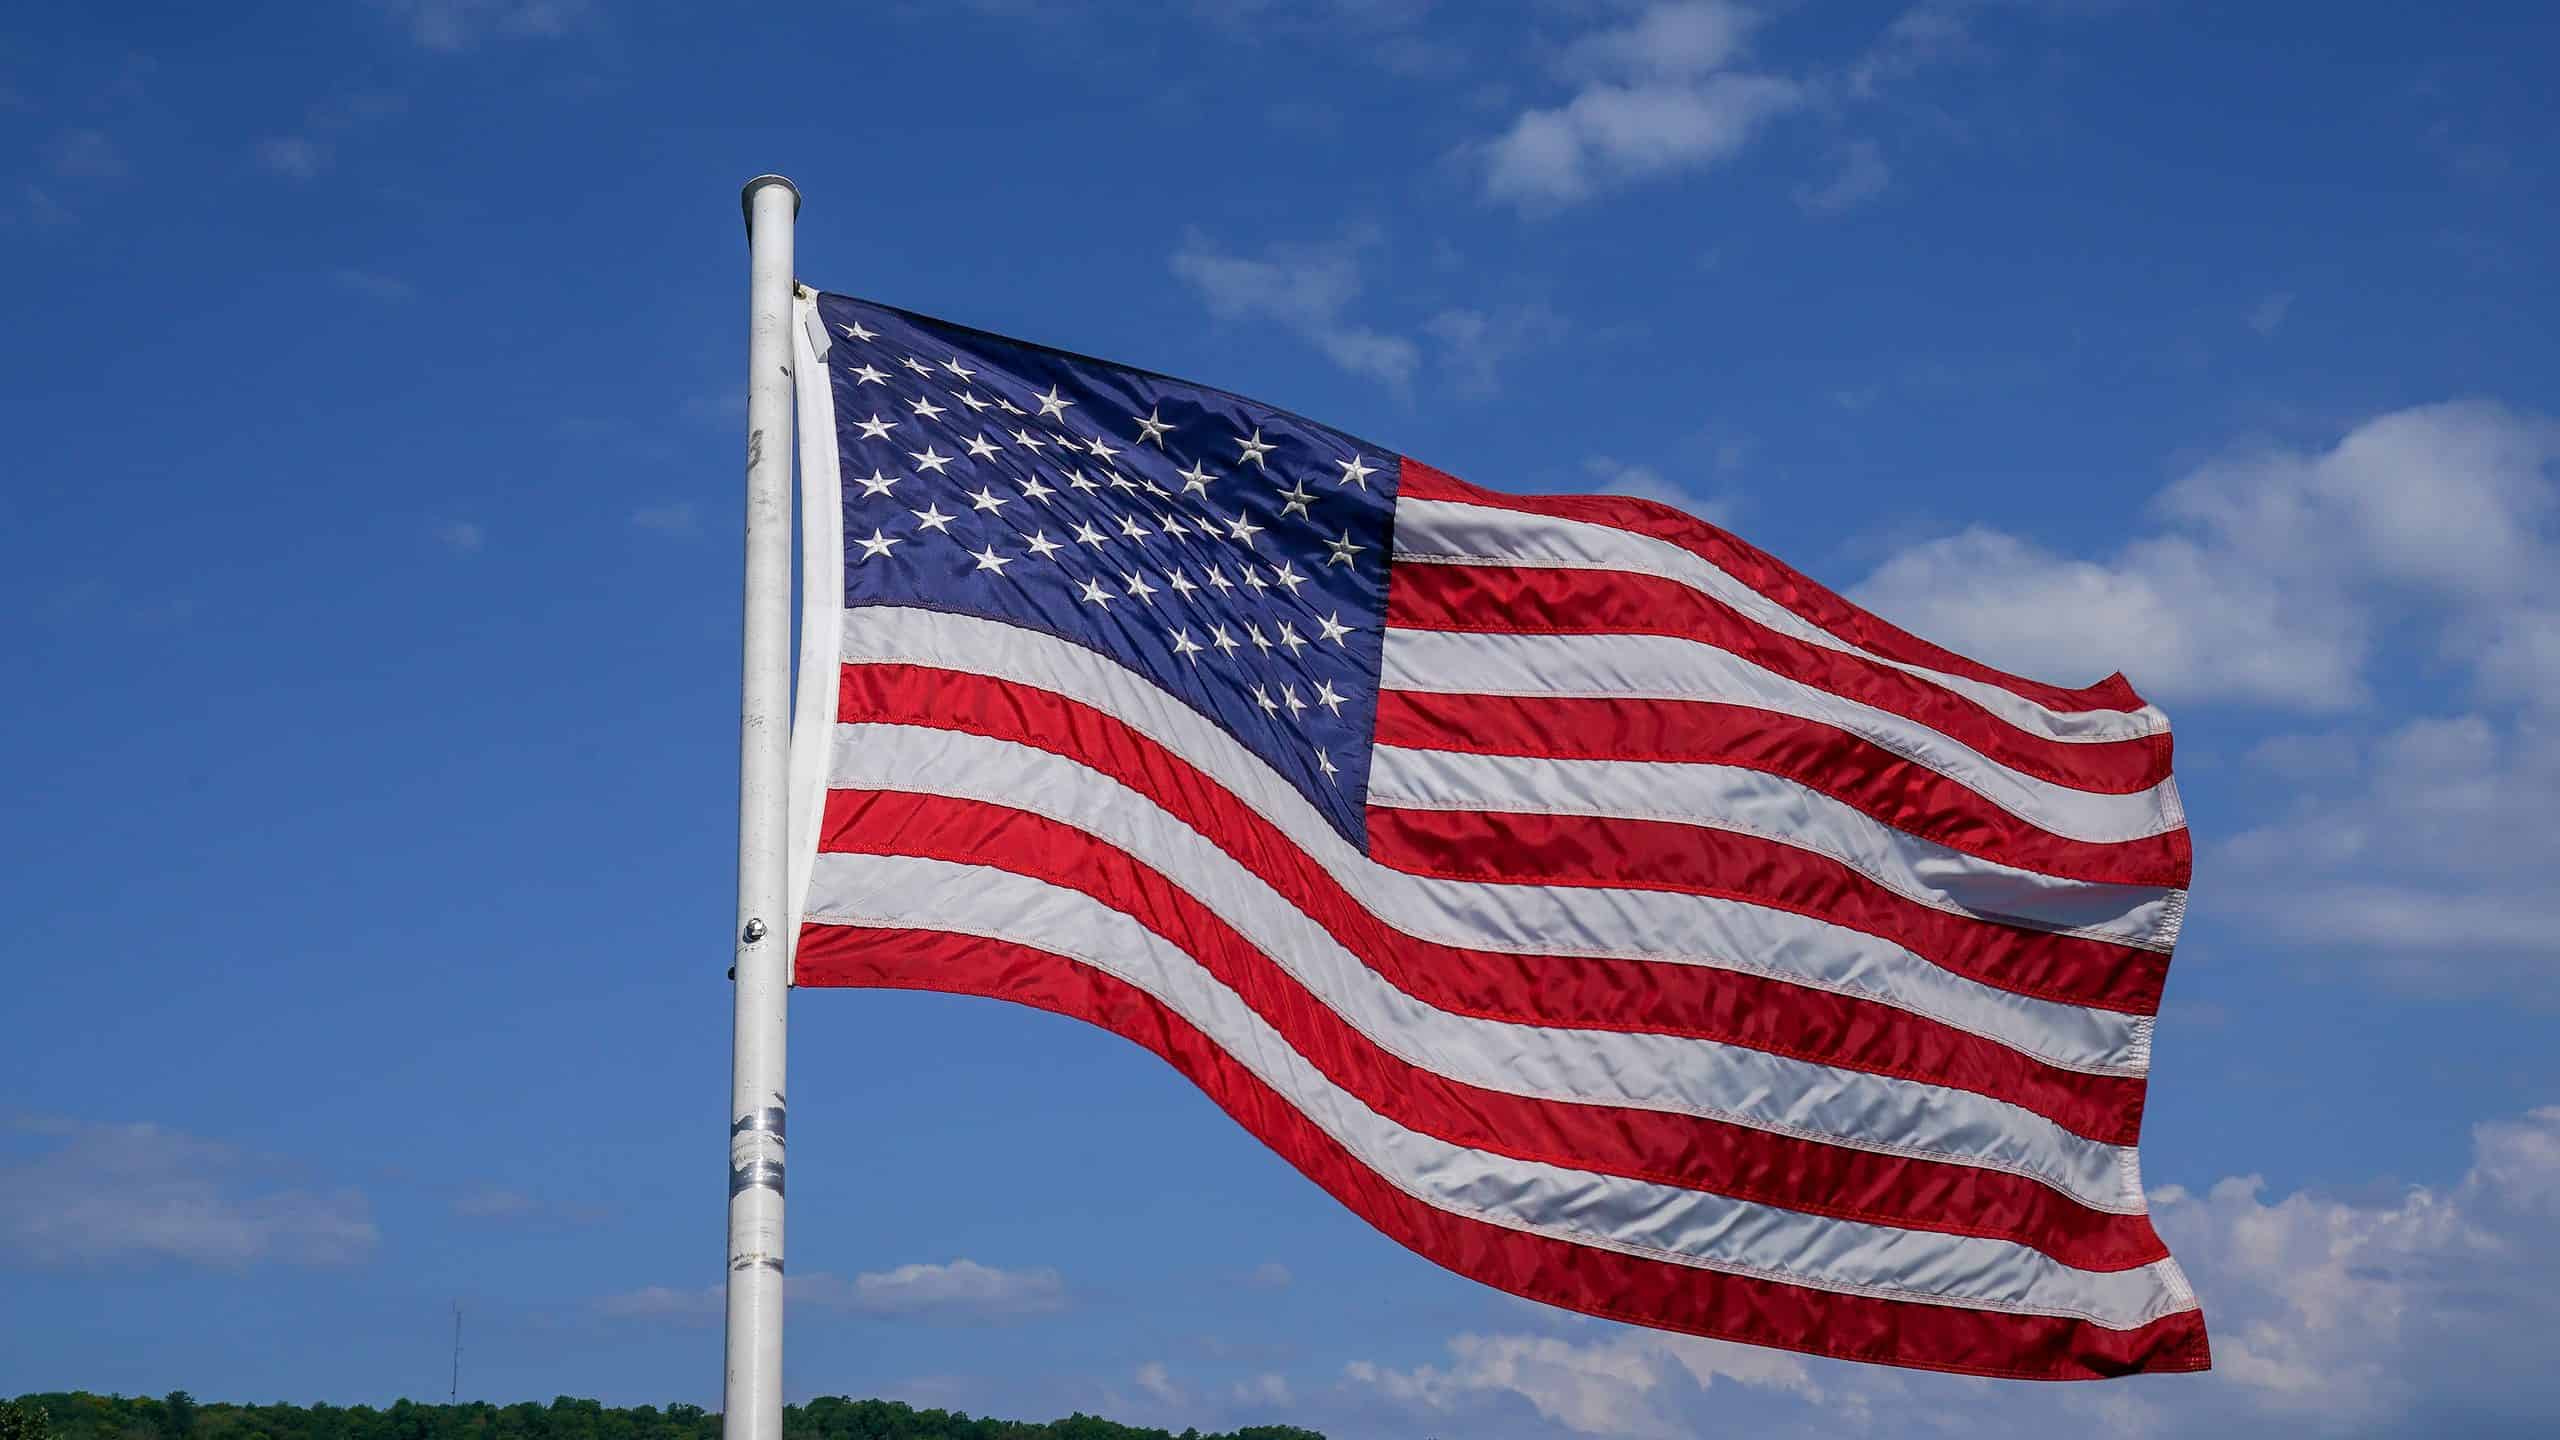 Bandiera degli Stati Uniti d'America (bandiera americana) al vento